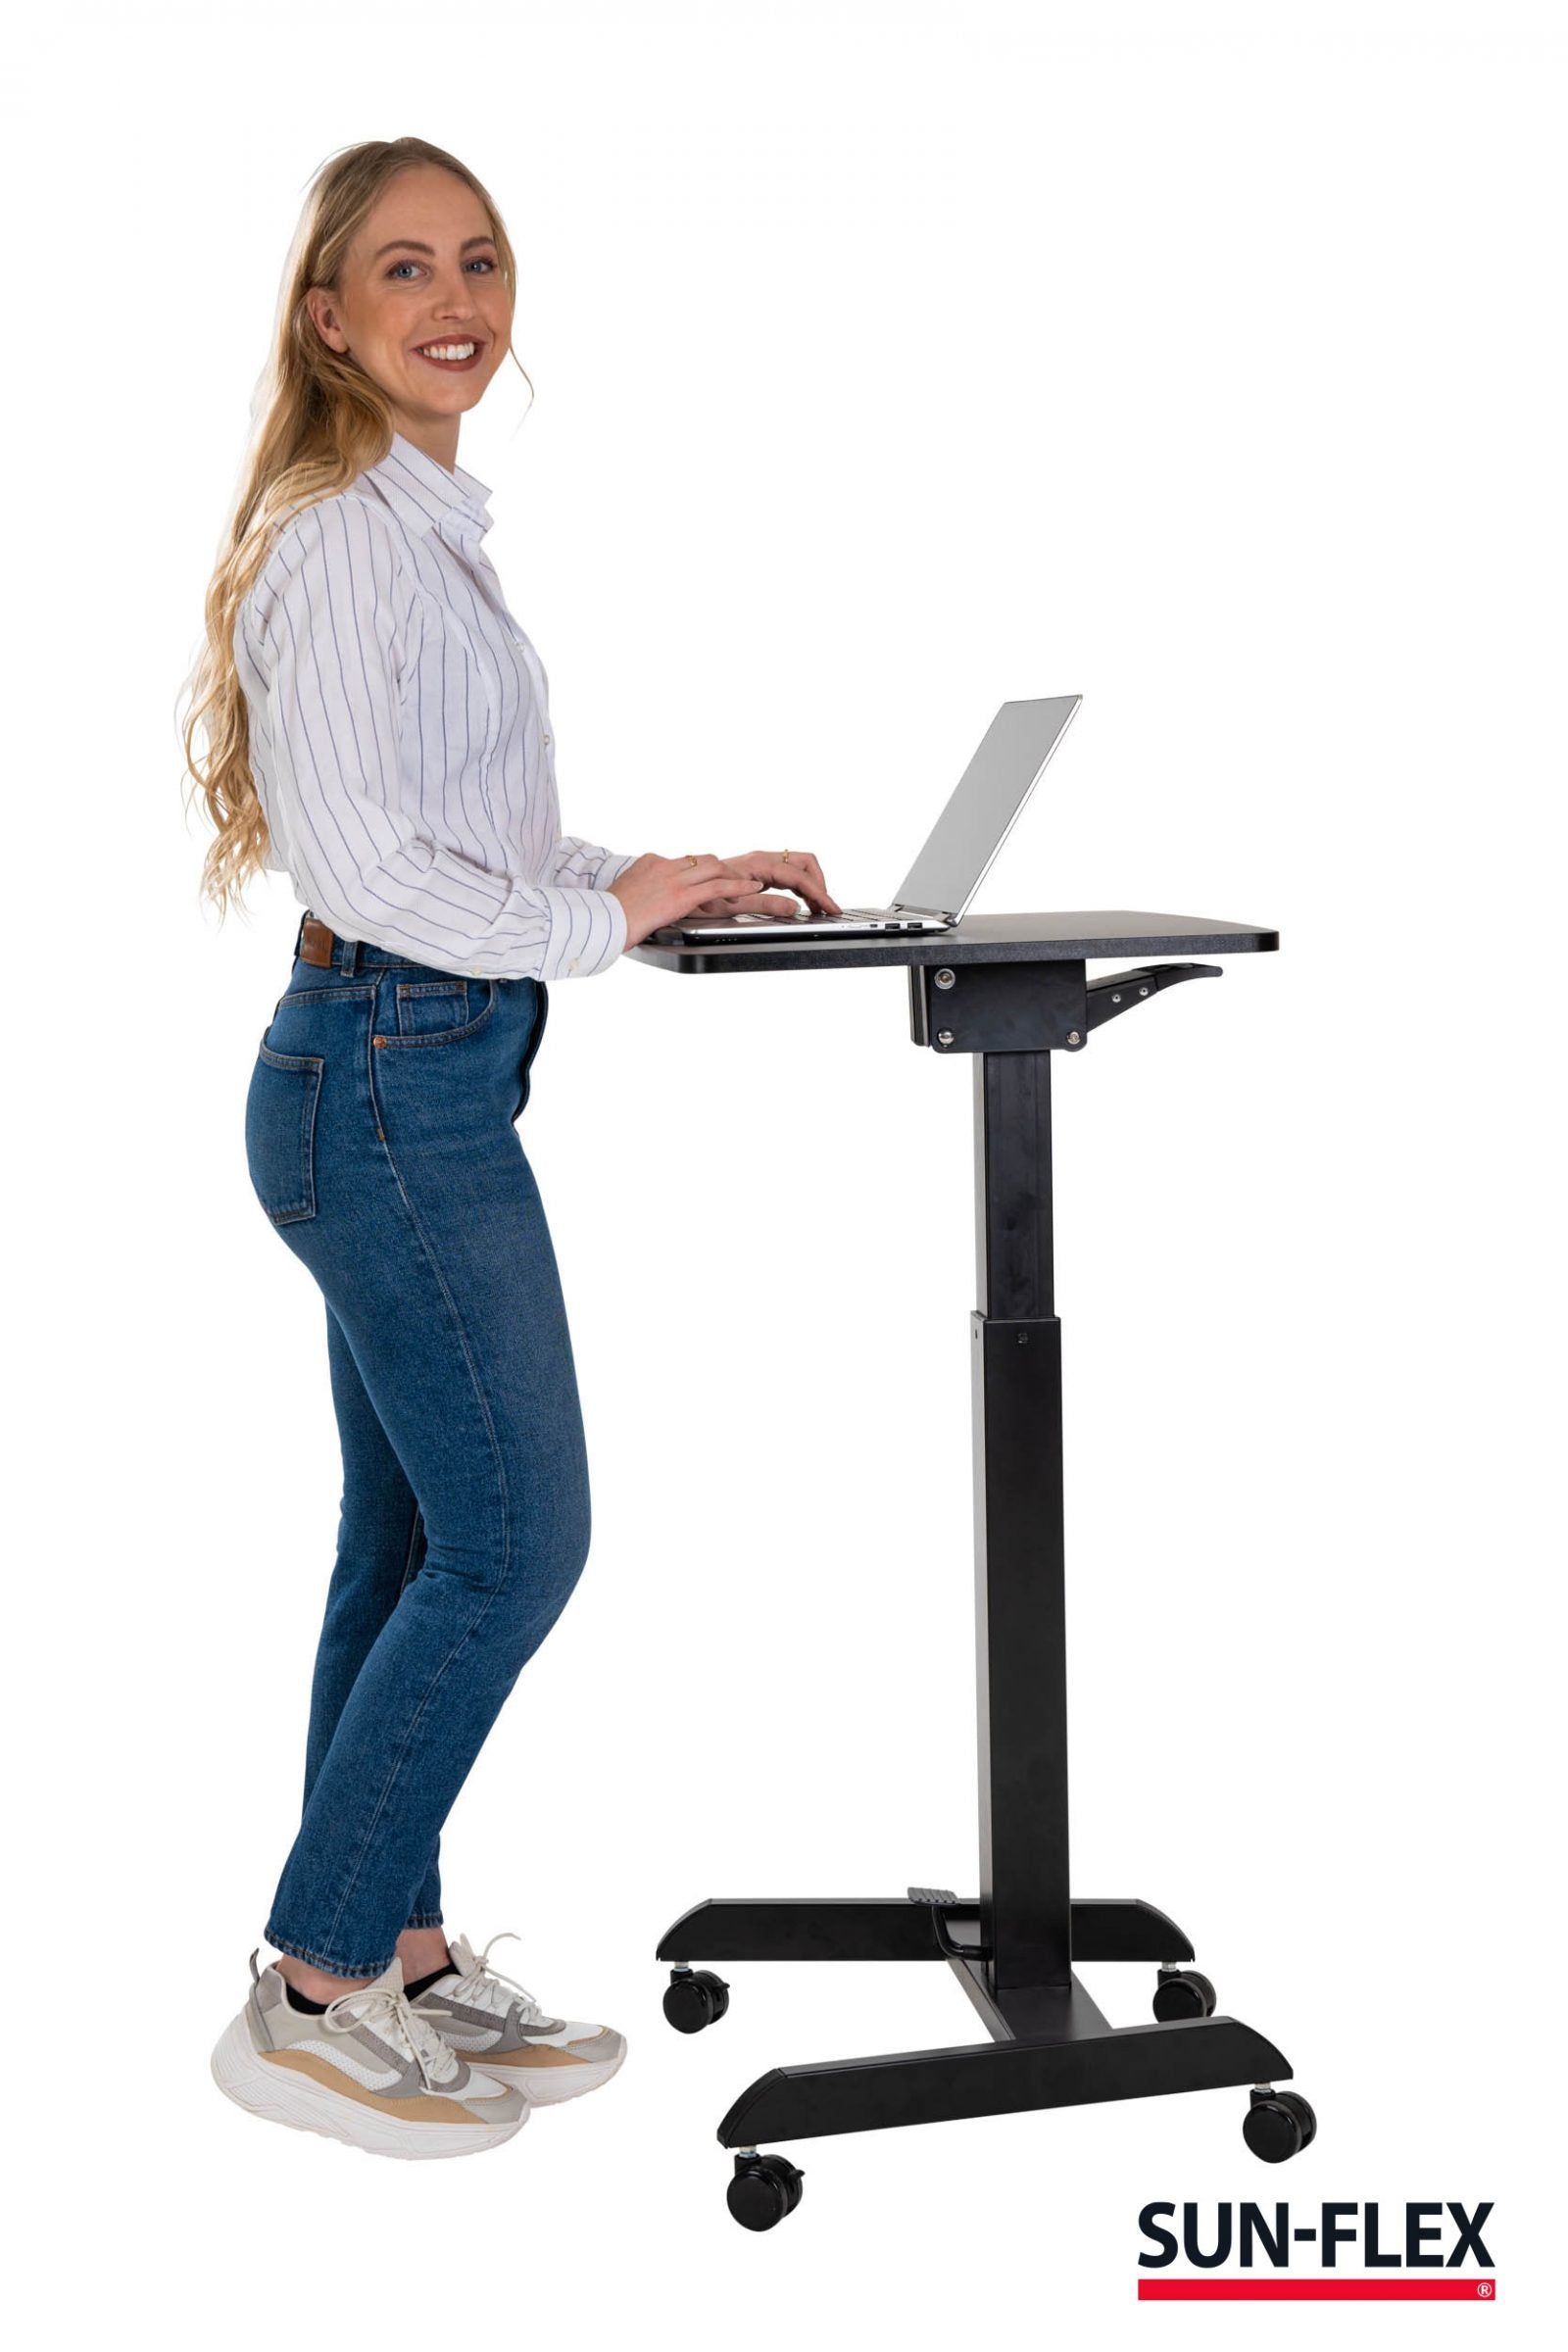 Kvinna står och ler mot kamera framför sitt kompakta svarta lilla höj och sänkbara skrivbord.